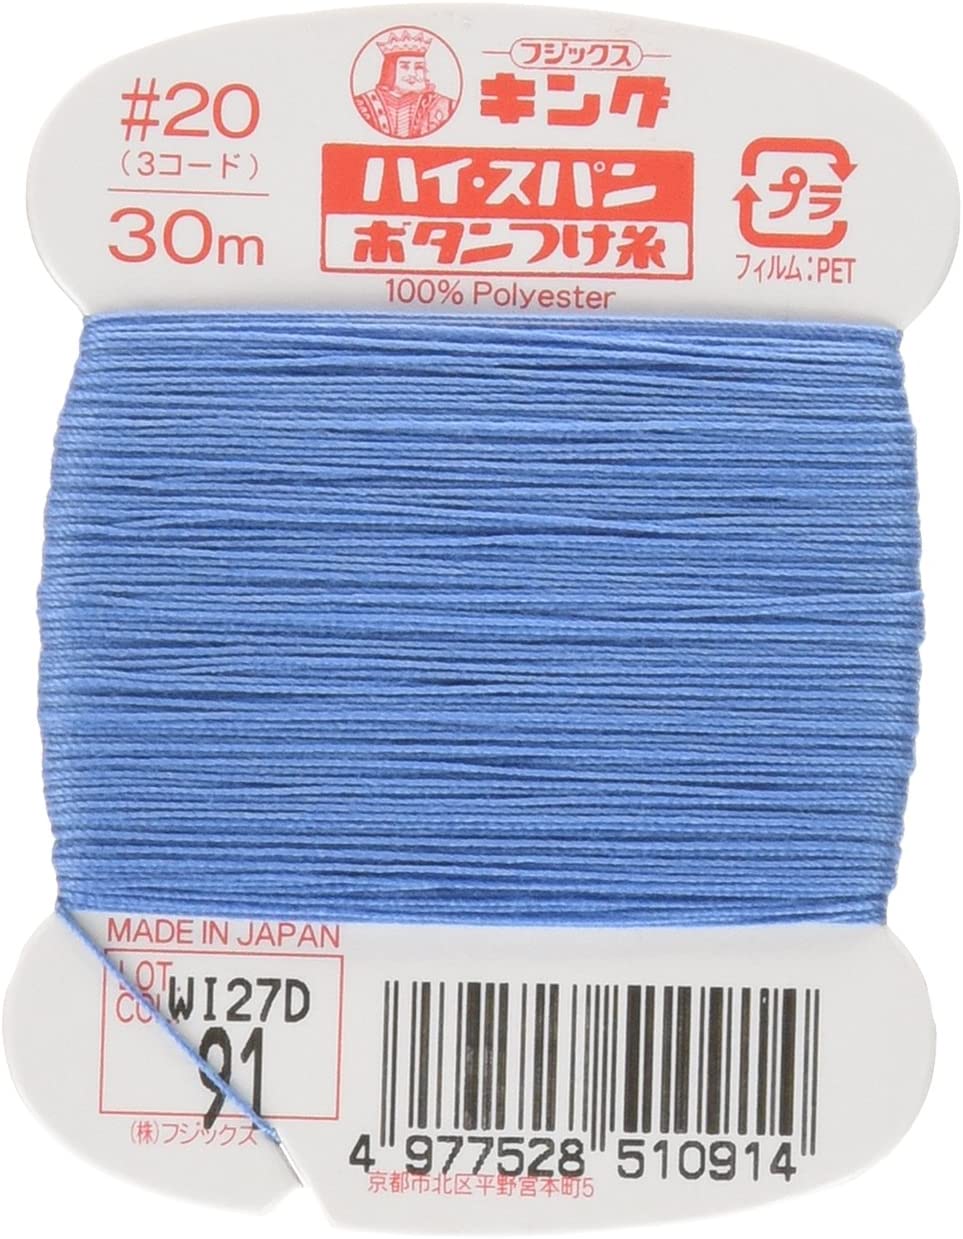 FK51-91 ハイスパンボタンつけ糸 #20 30m巻 (枚)